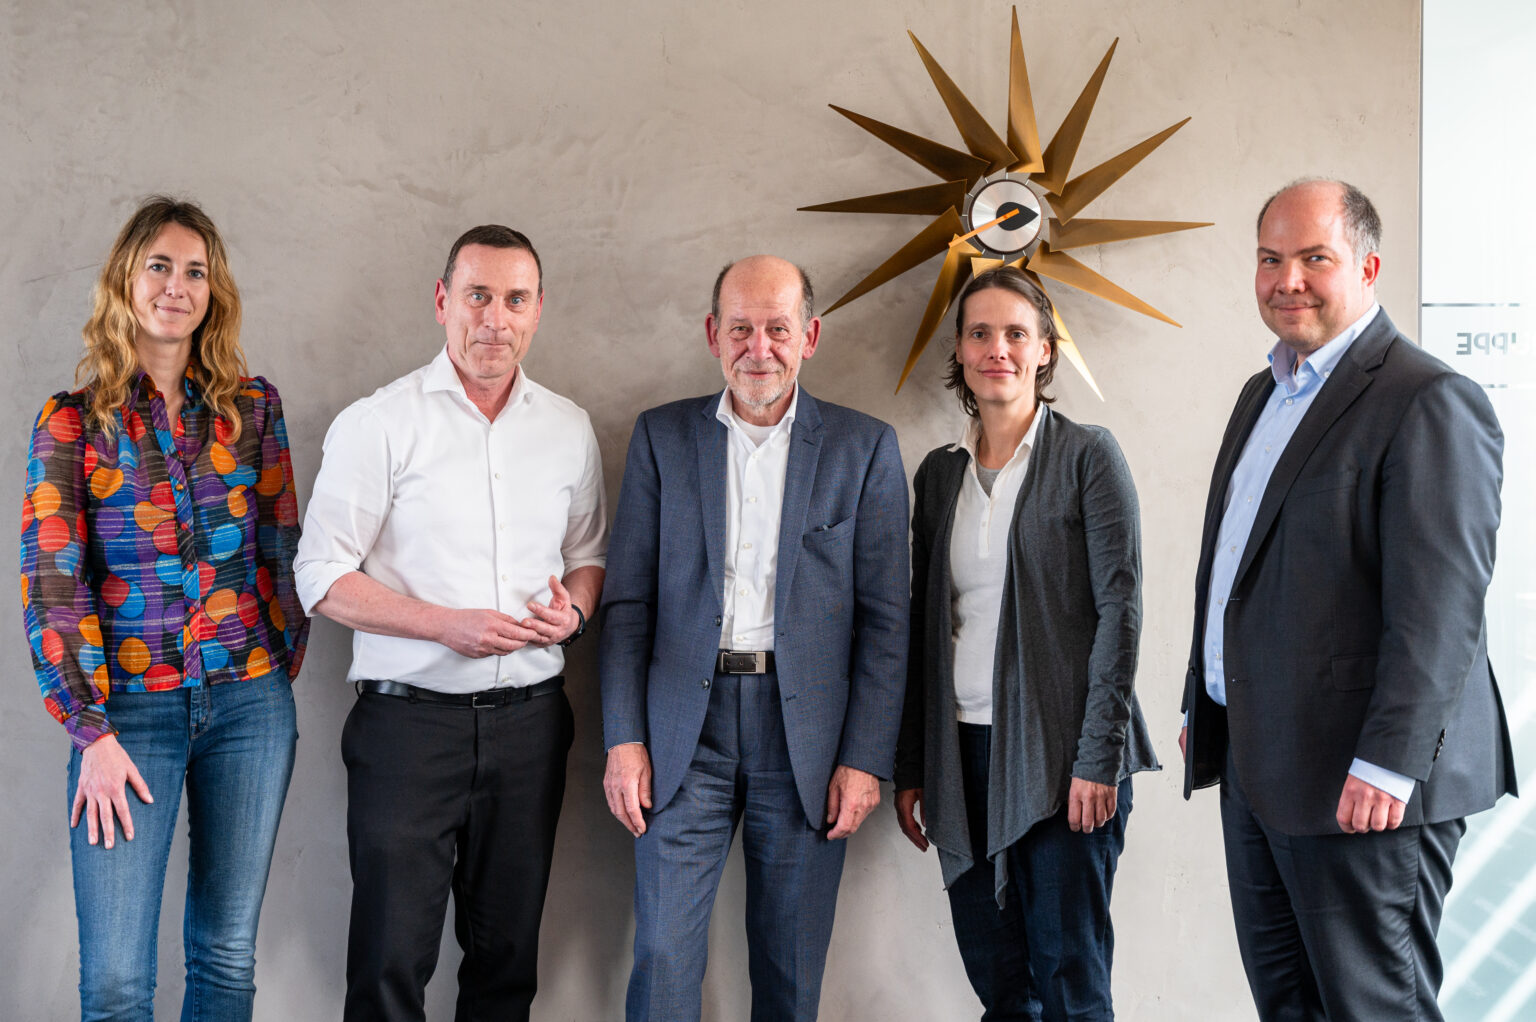 Übergabe der LEBEN UND TOD in Berlin mit (von links) Frau Wiedemann, Herr Dilge, Herr Schneider, Frau Rolf, Herr Zimmermann